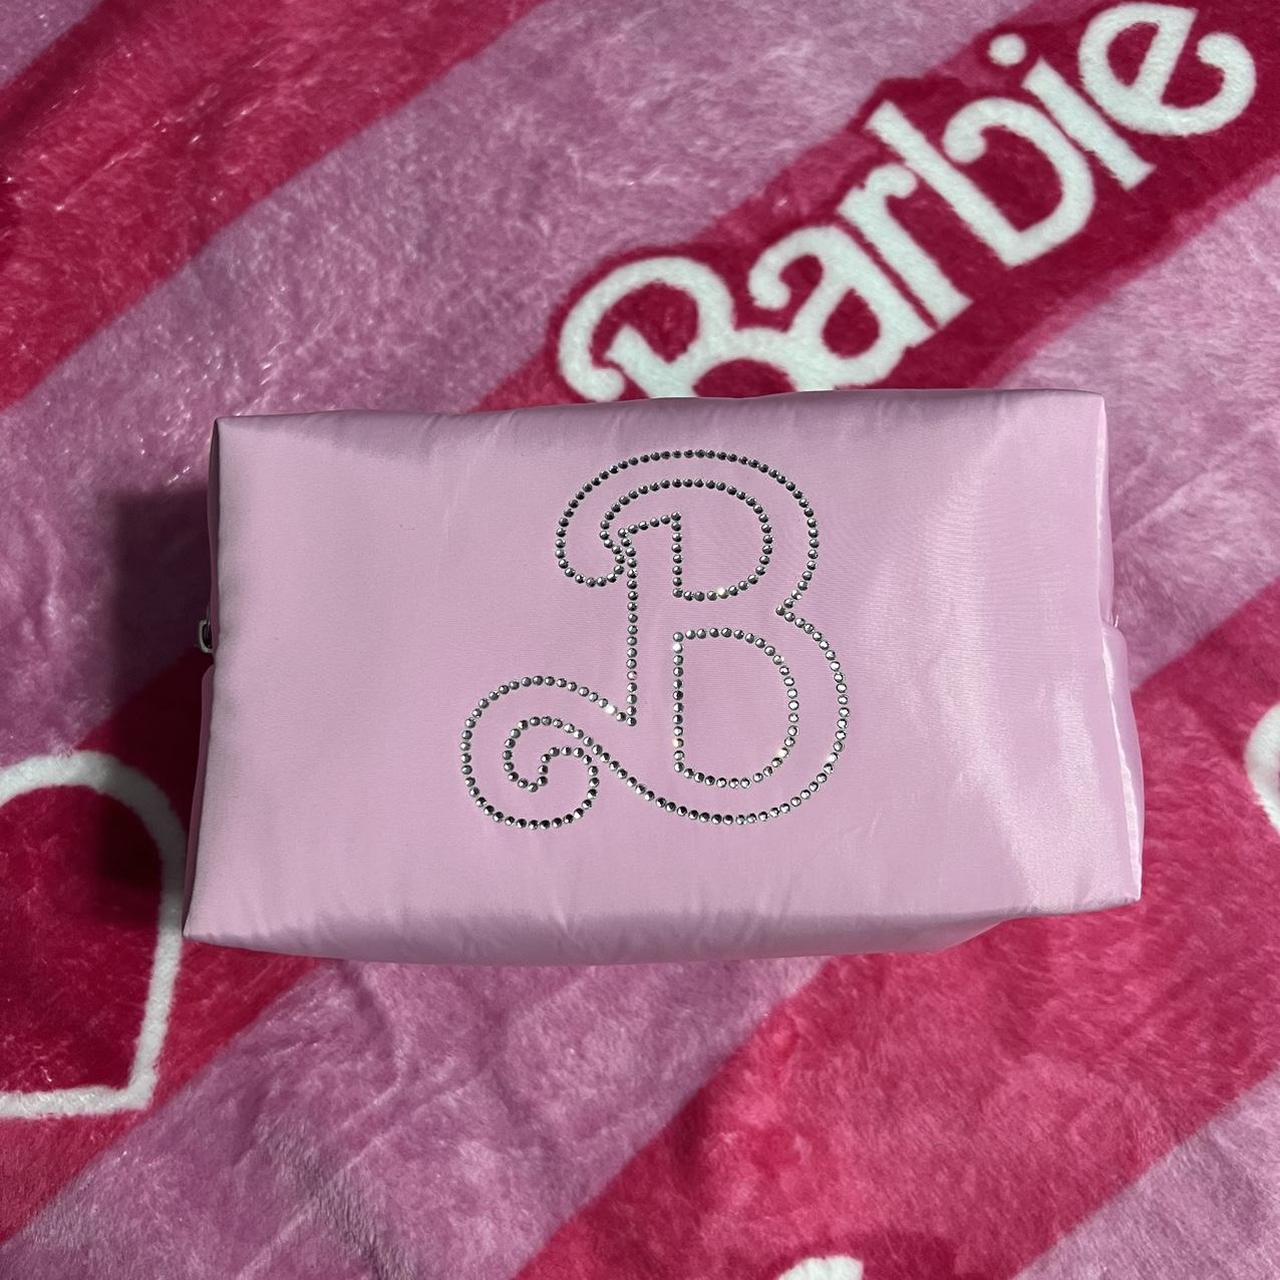 NWOT Barbie Pink Sparkly top handle bag This bag is - Depop